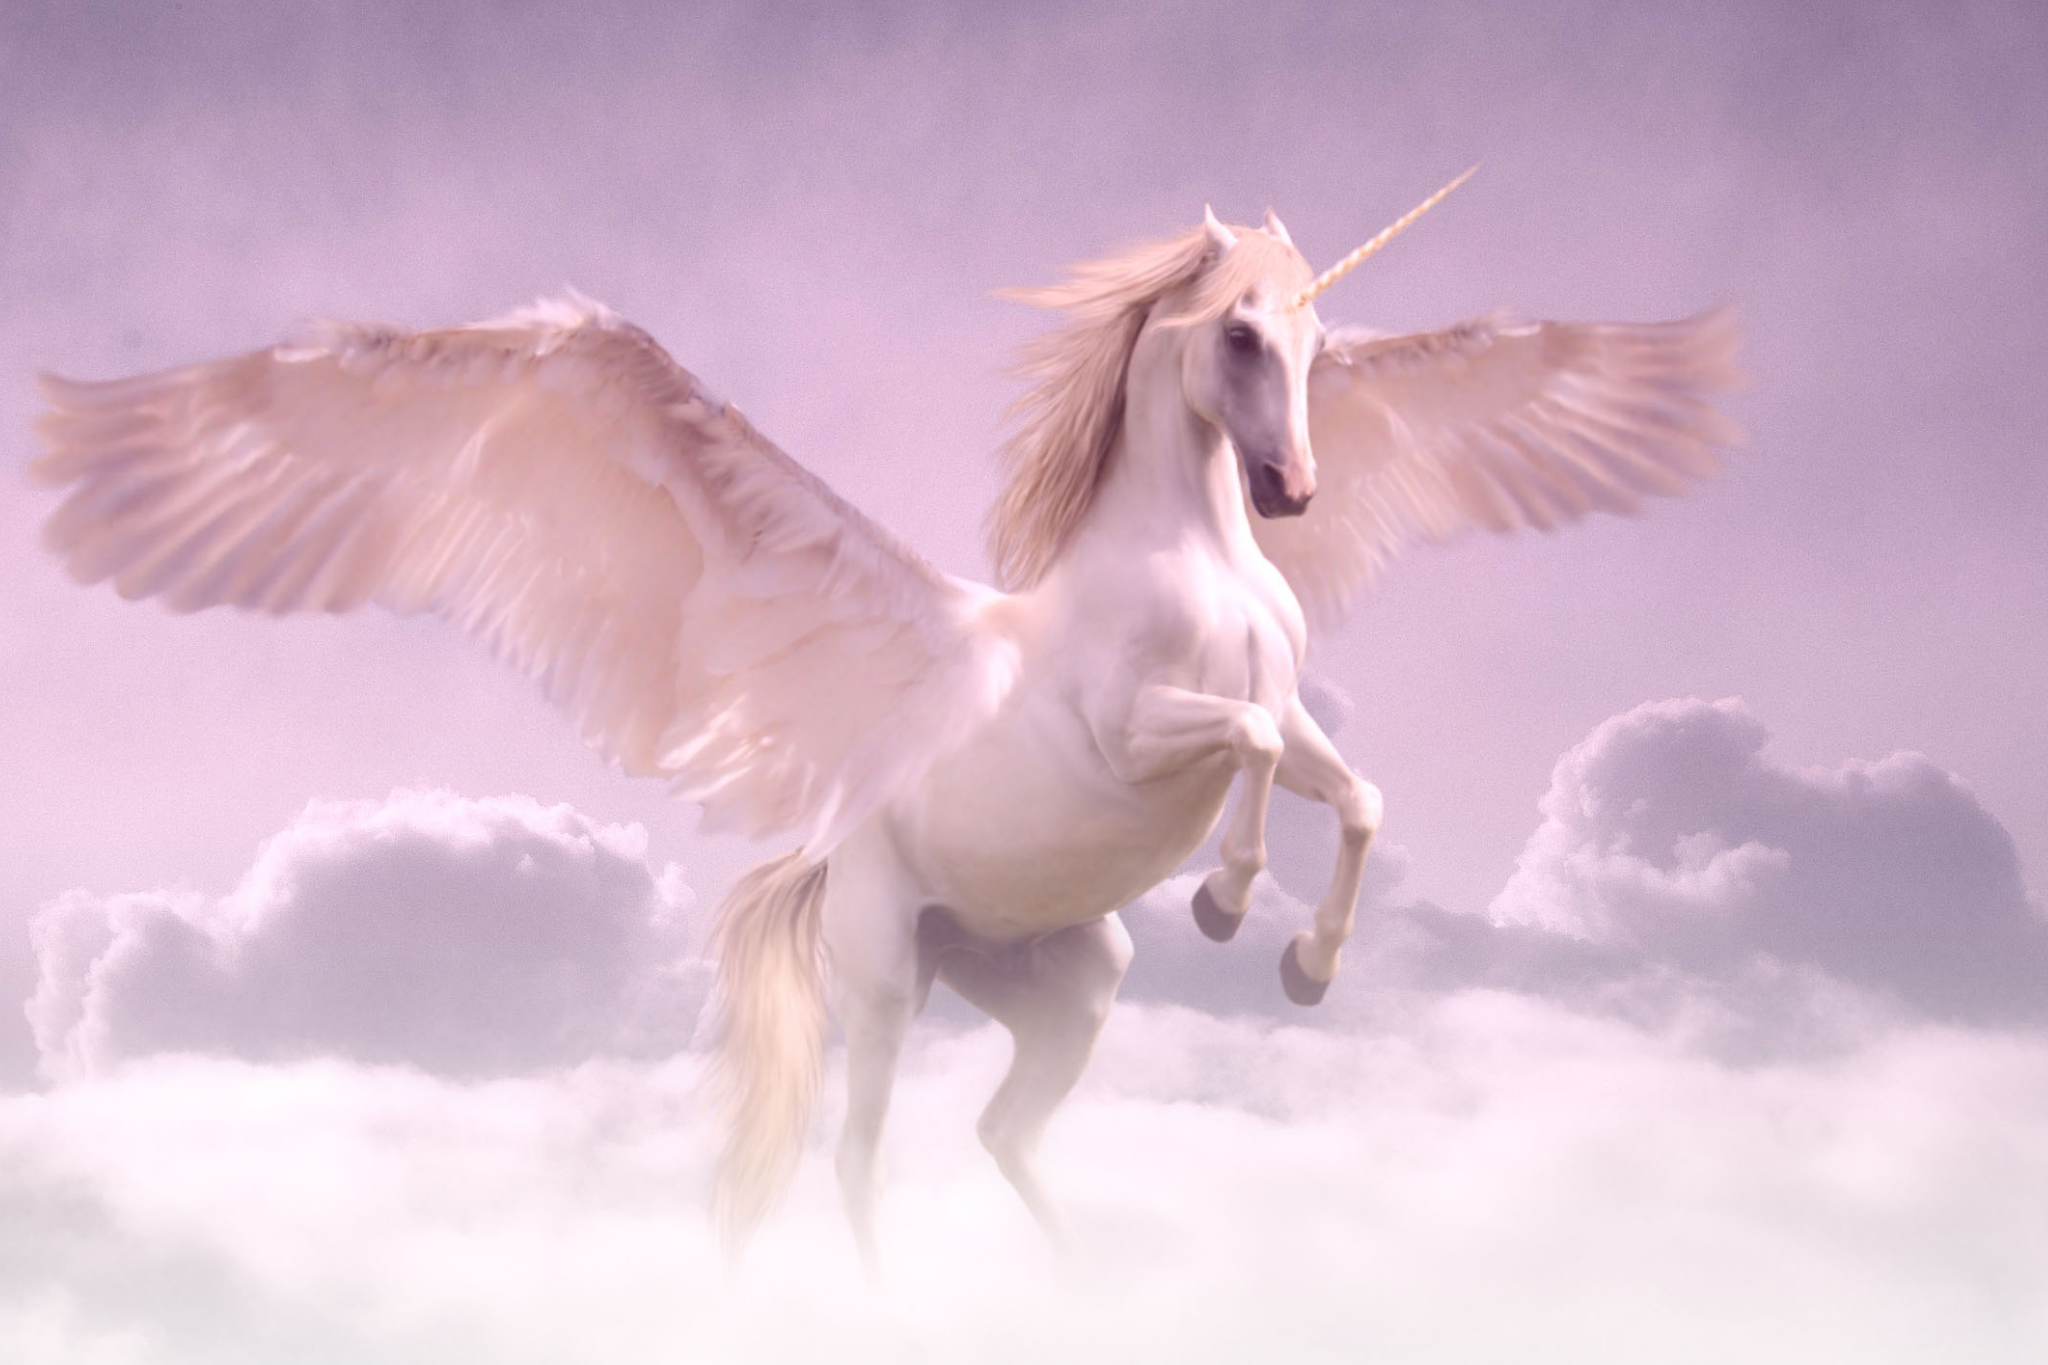 Flying unicorn